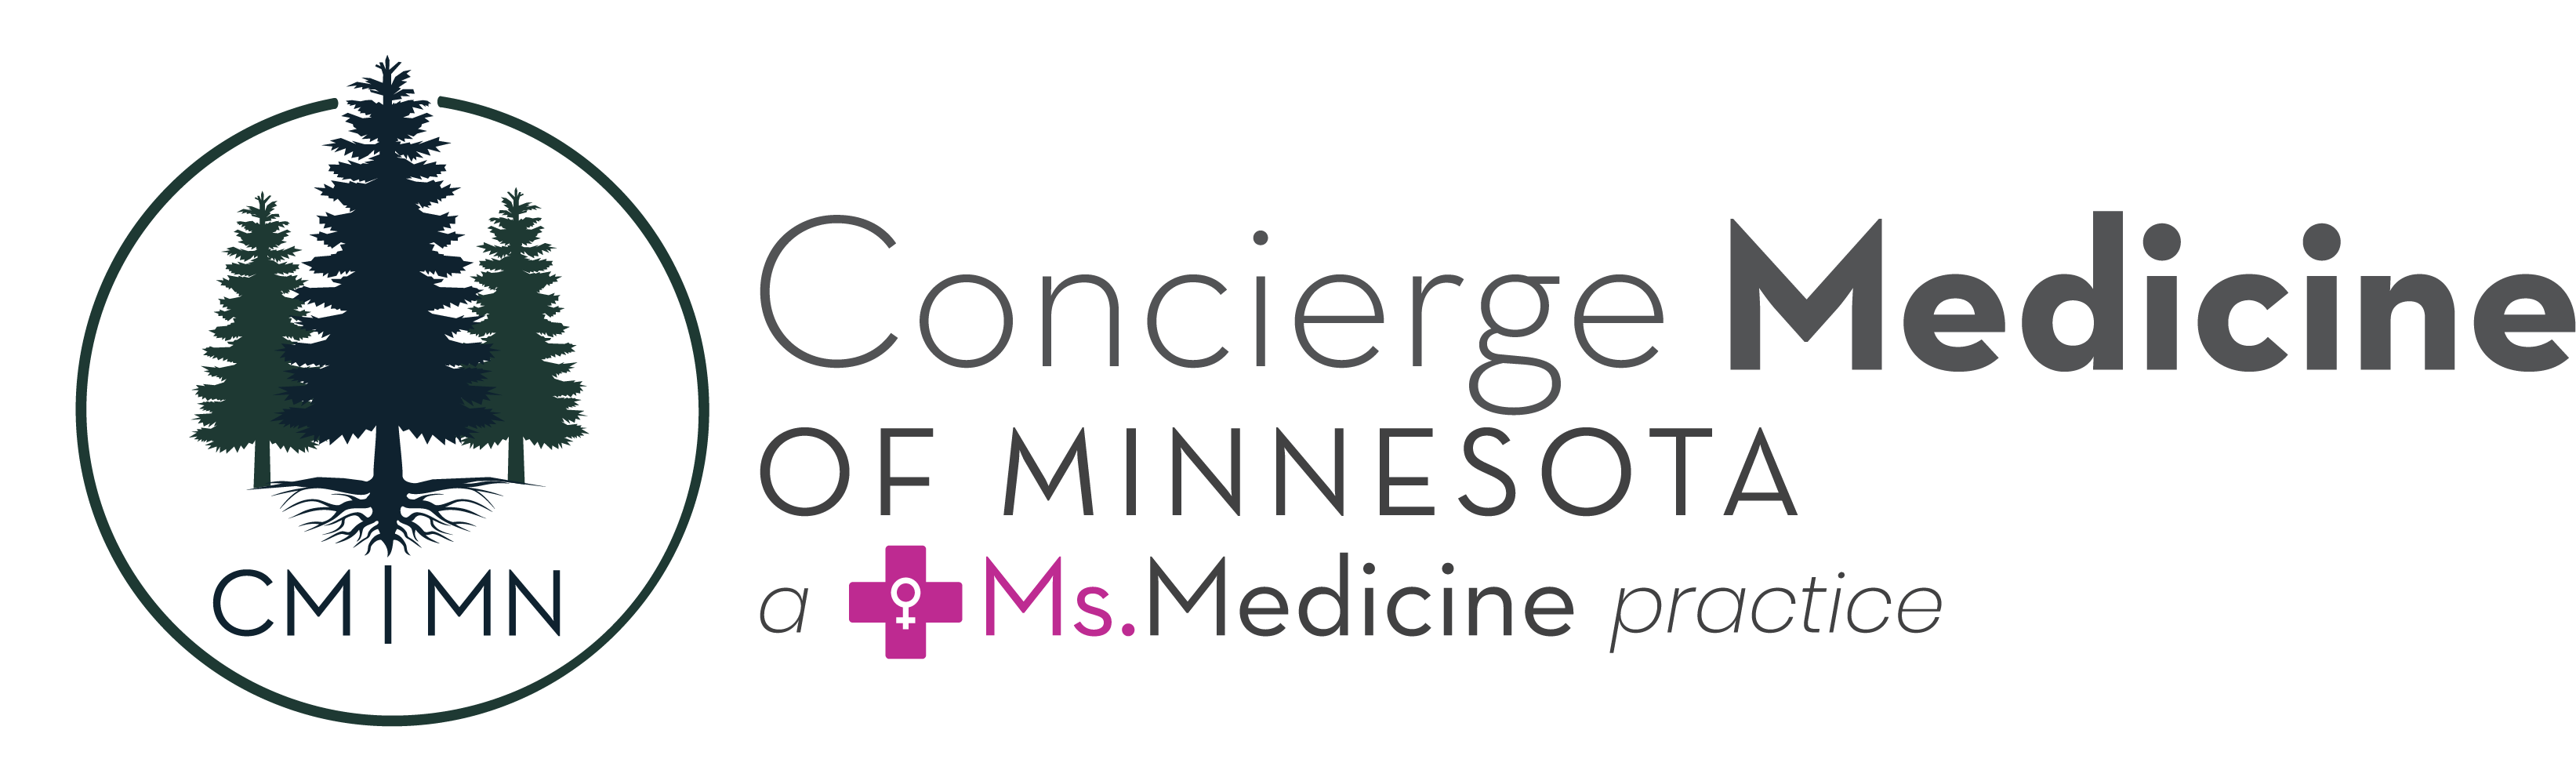 Concierge Medicine of MN